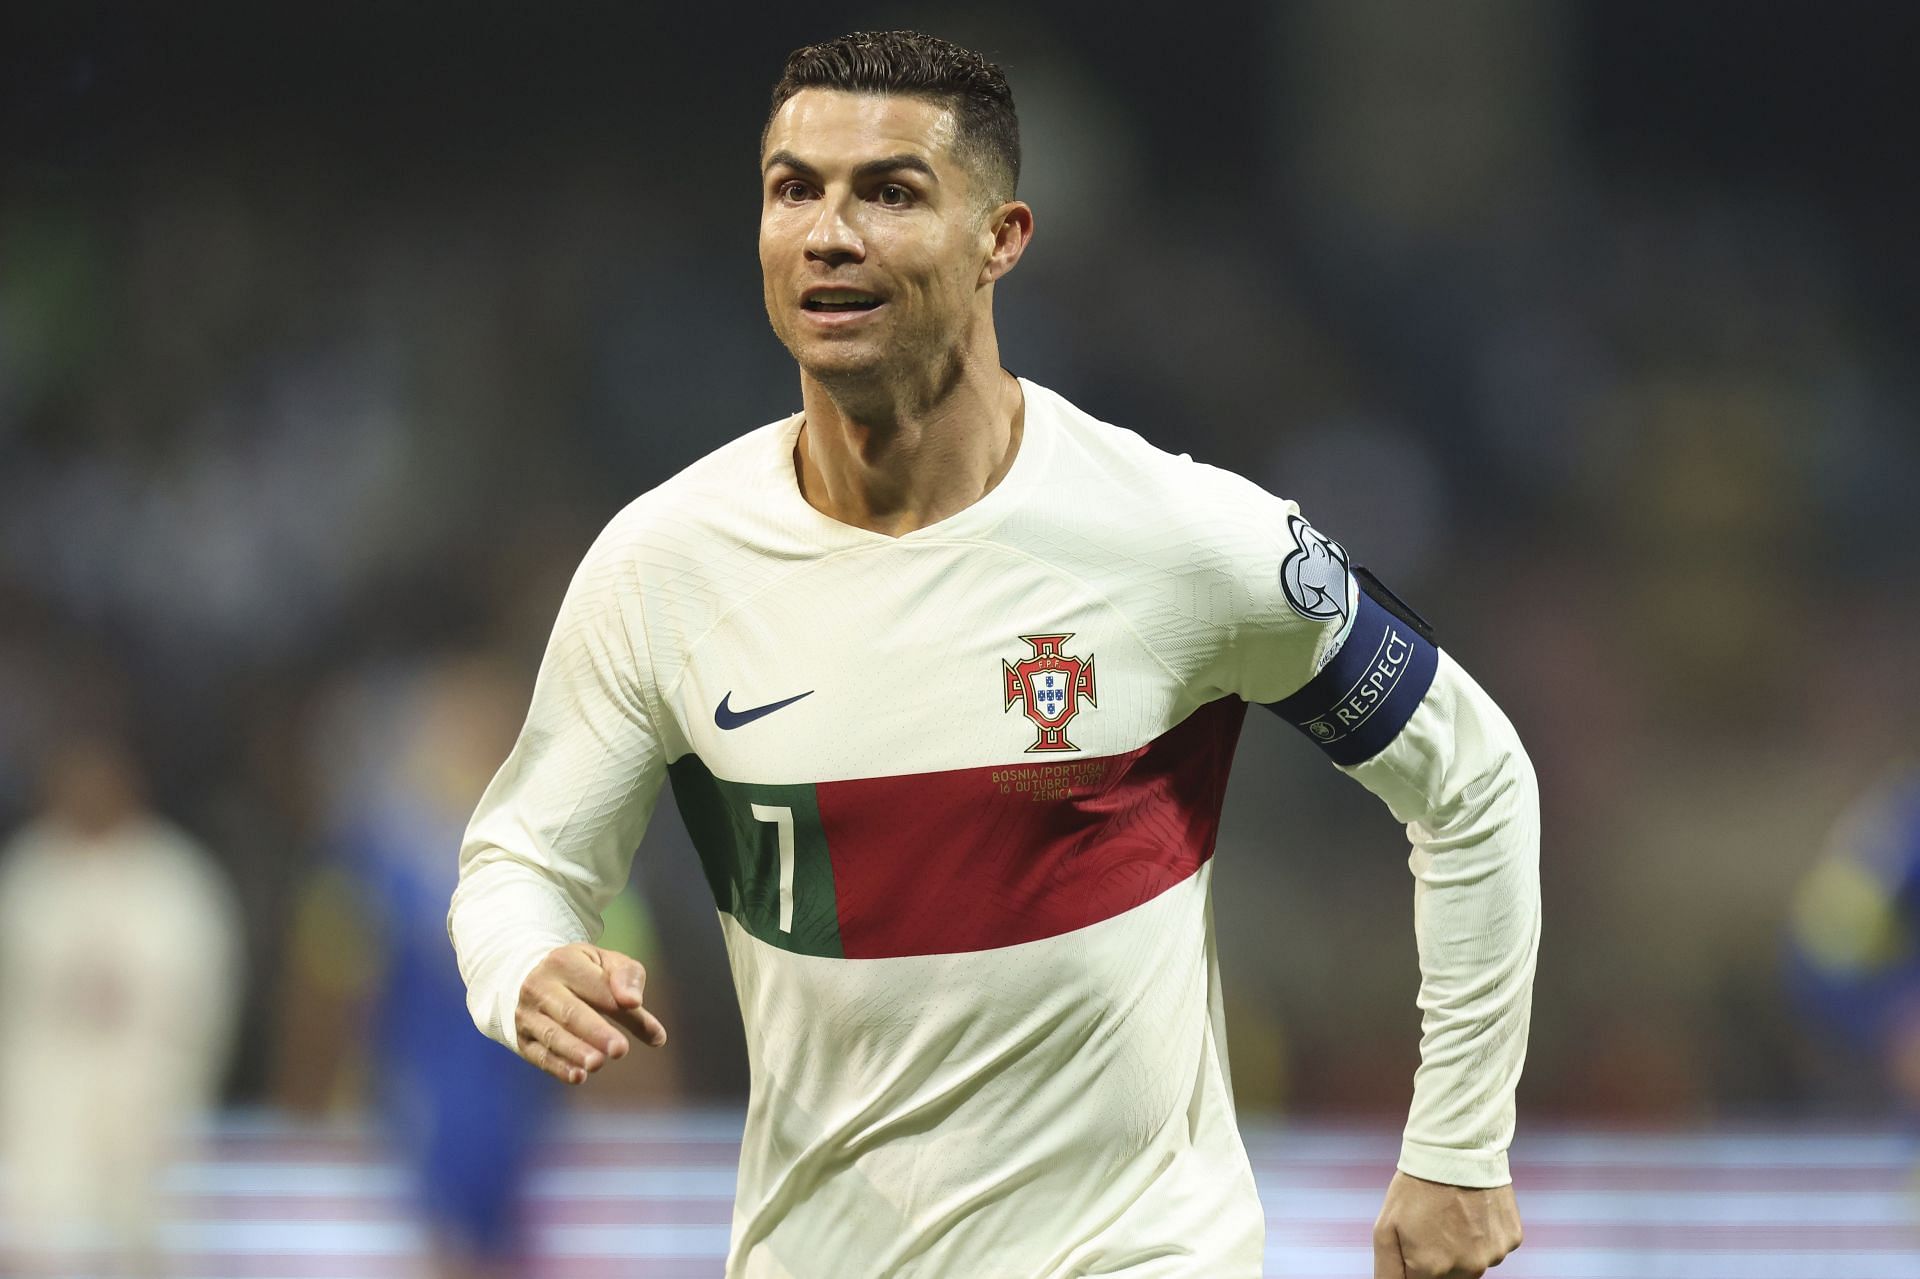 Al-Nasssr attacker Cristiano Ronaldo